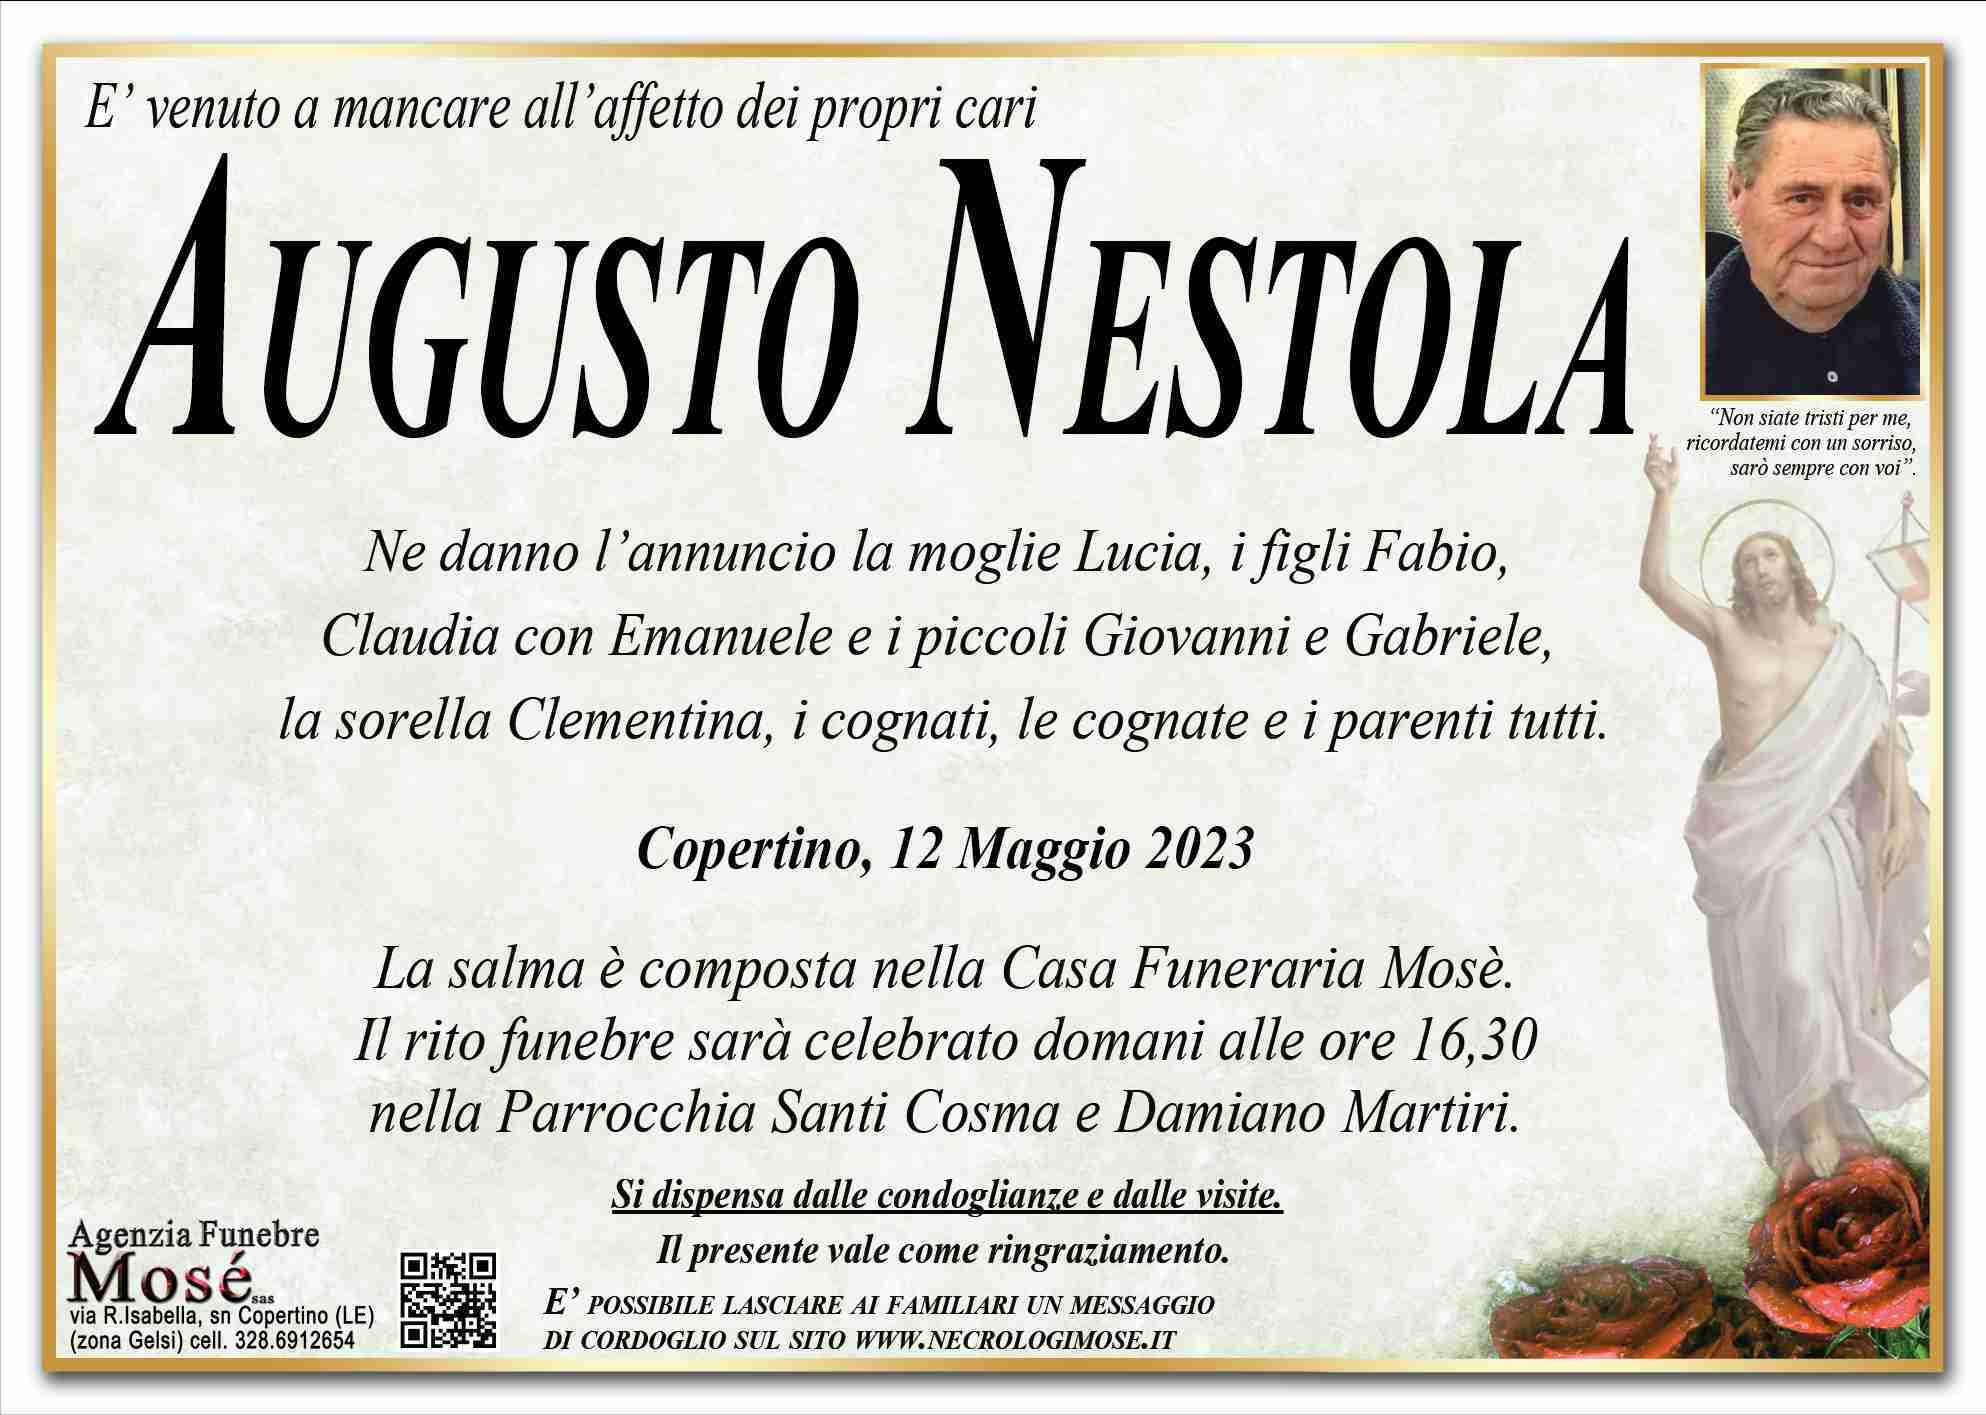 Augusto Nestola